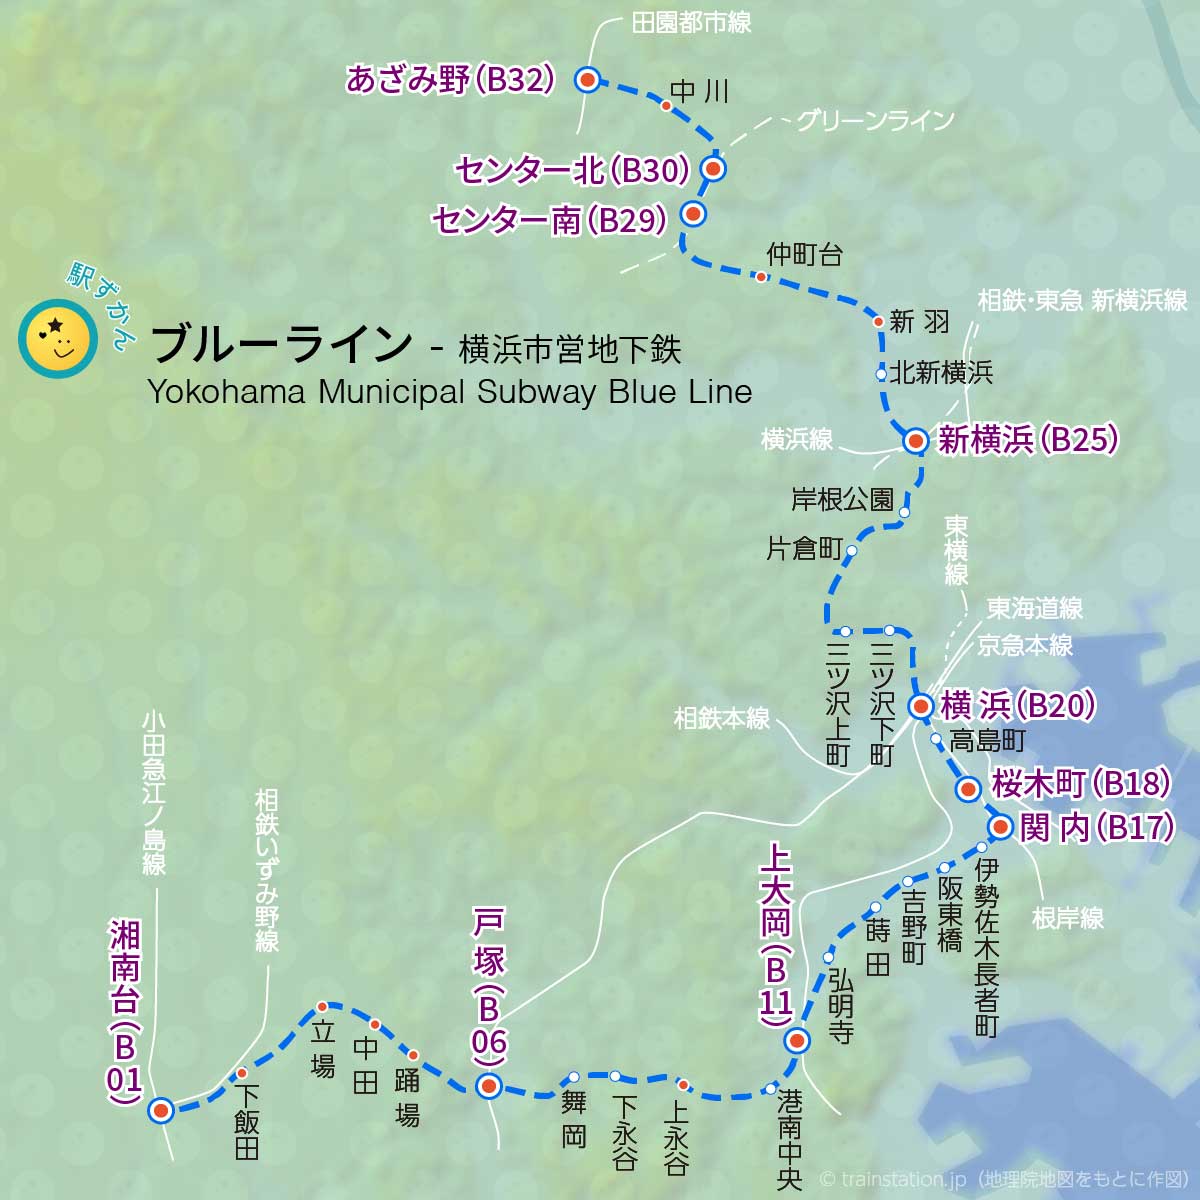 横浜市営地下鉄ブルーライン路線図と地形マップ